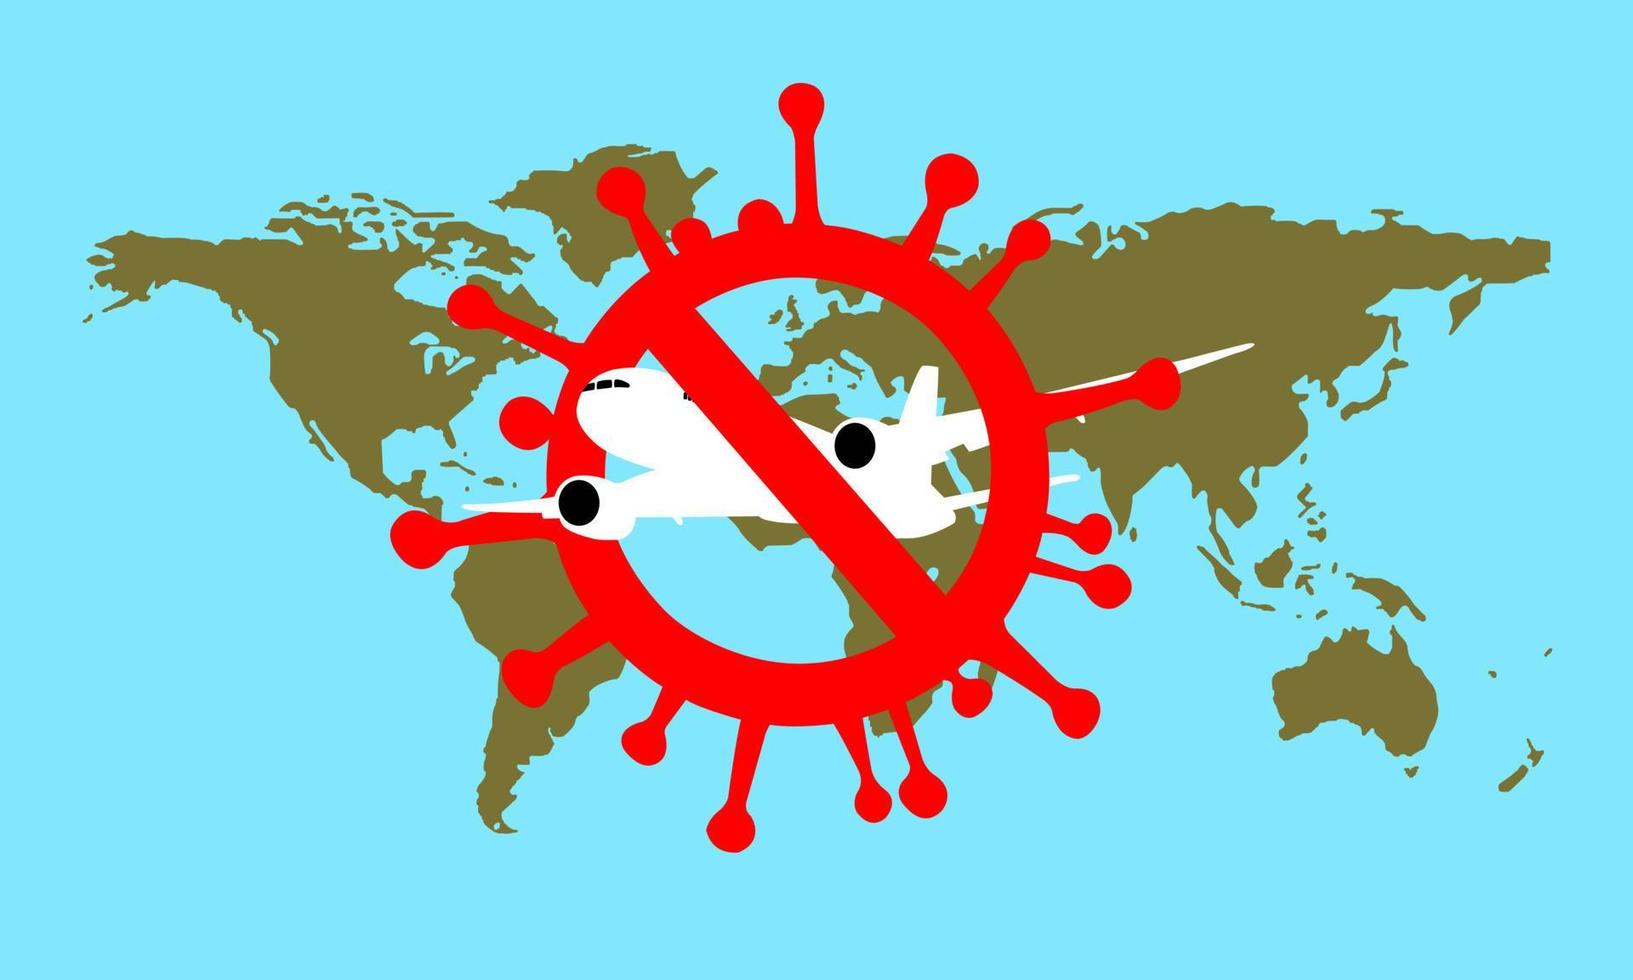 la compagnie aérienne annule les vols intérieurs et internationaux. concept de verrouillage du coronavirus pour ne pas se propager. les voyages sont interdits pendant la pandémie de virus. vecteur